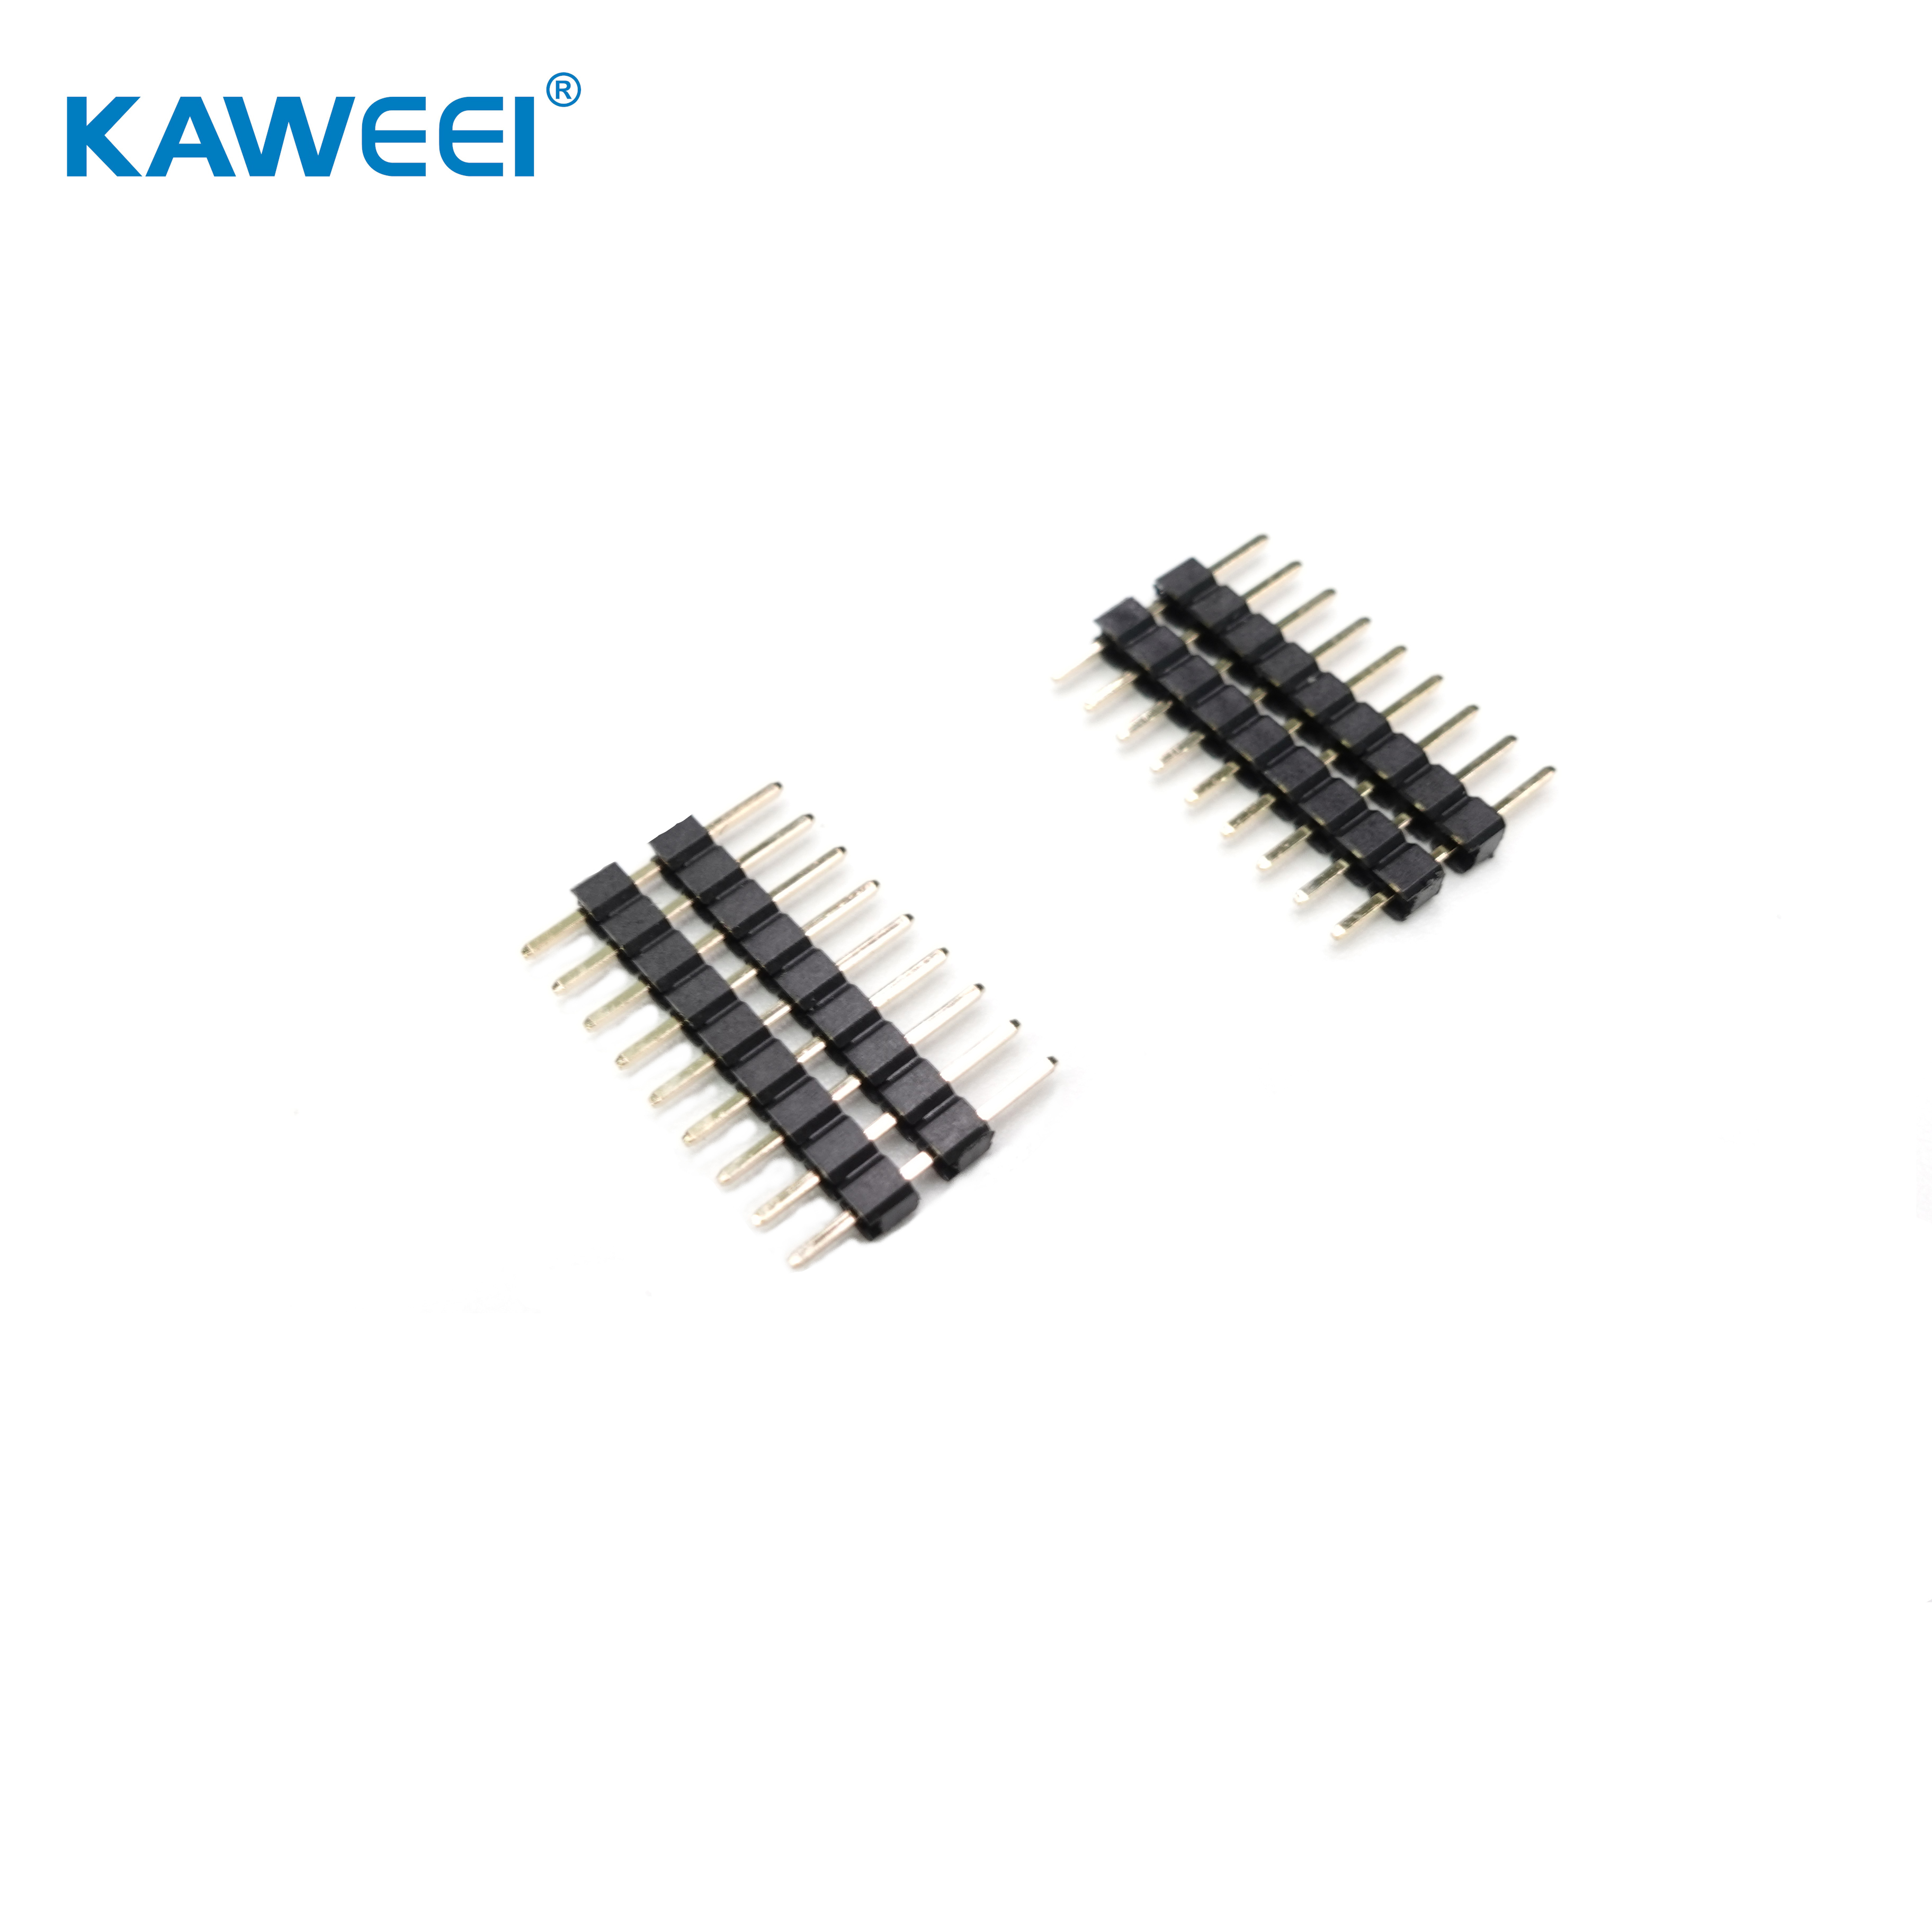 2,54 mm pitch pin header lige type kort-til-kort-stik PCB-stik